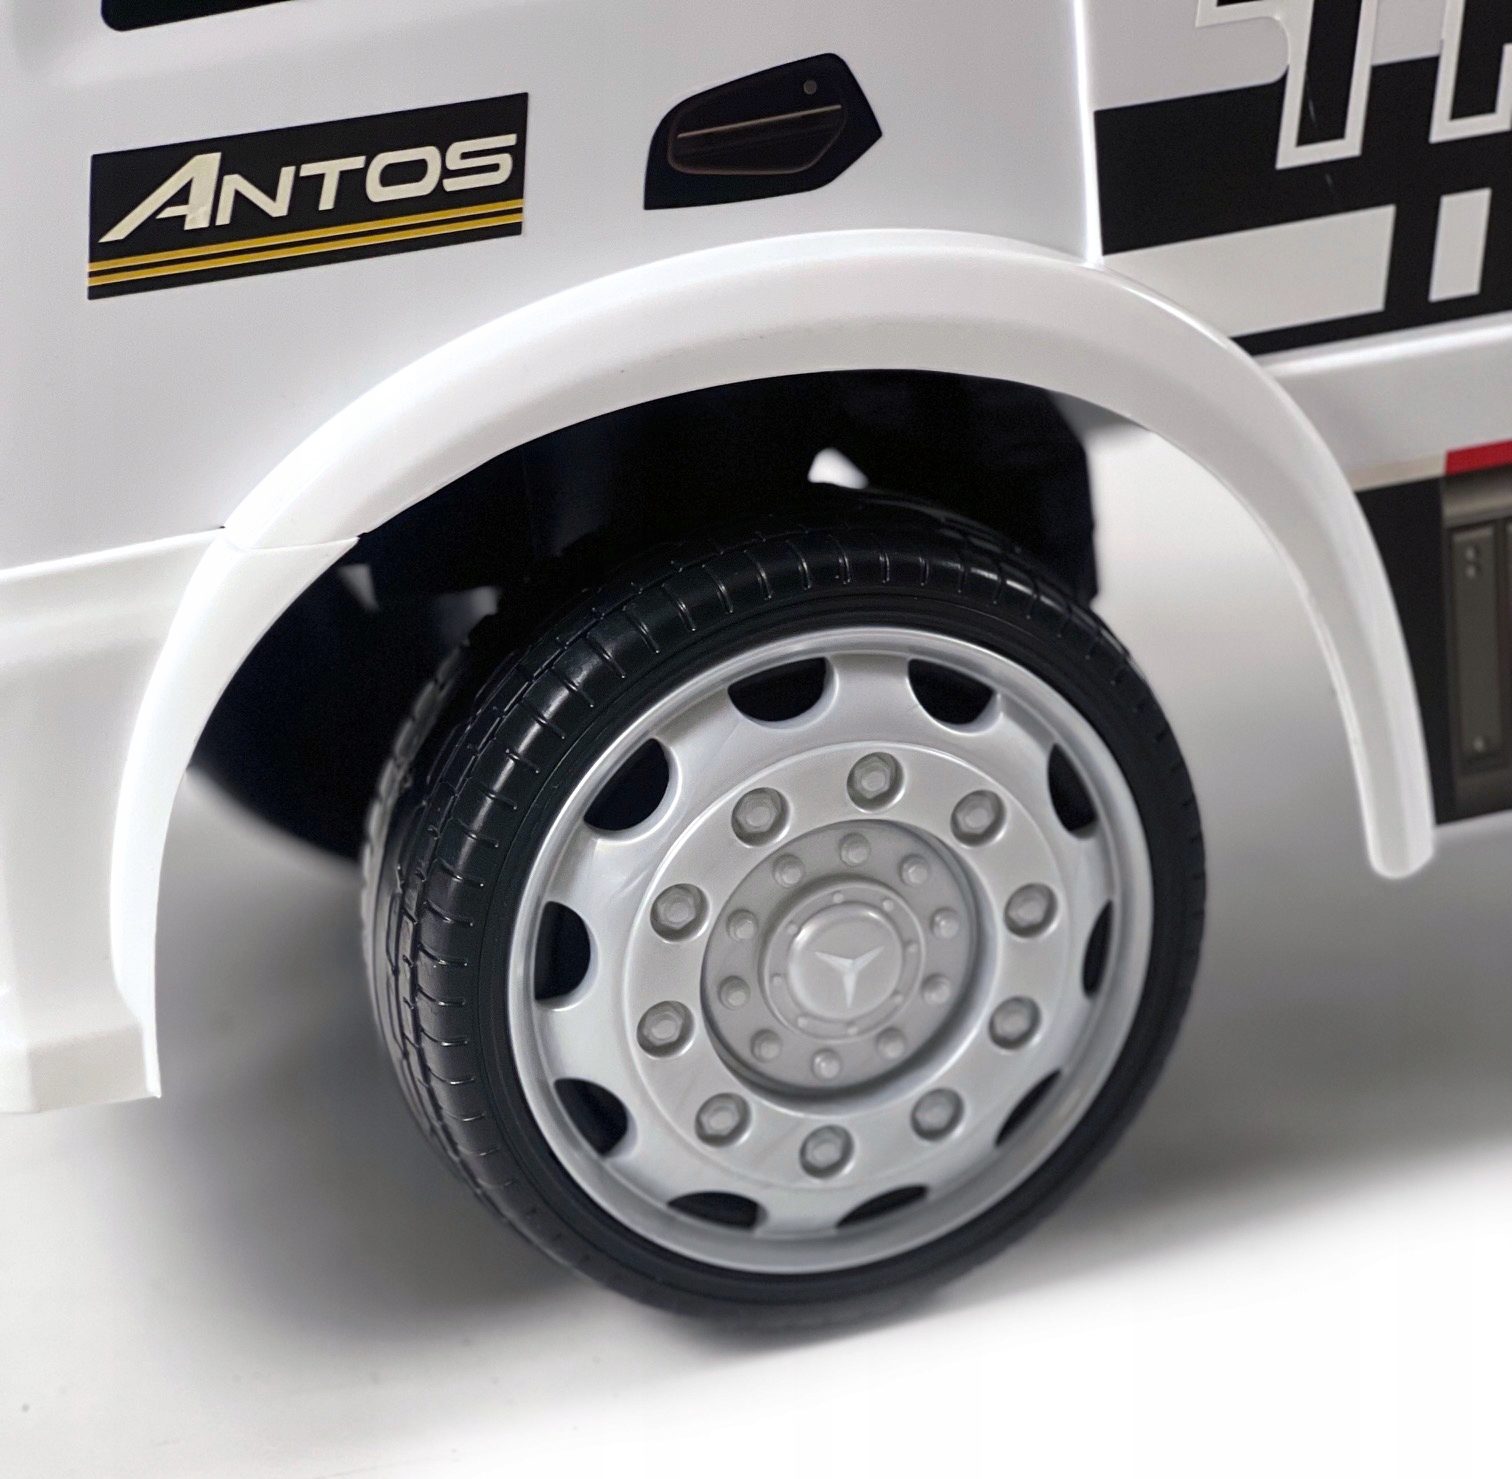 Jeździk pchacz dla dziecka Mercedes Antos Truck - biały